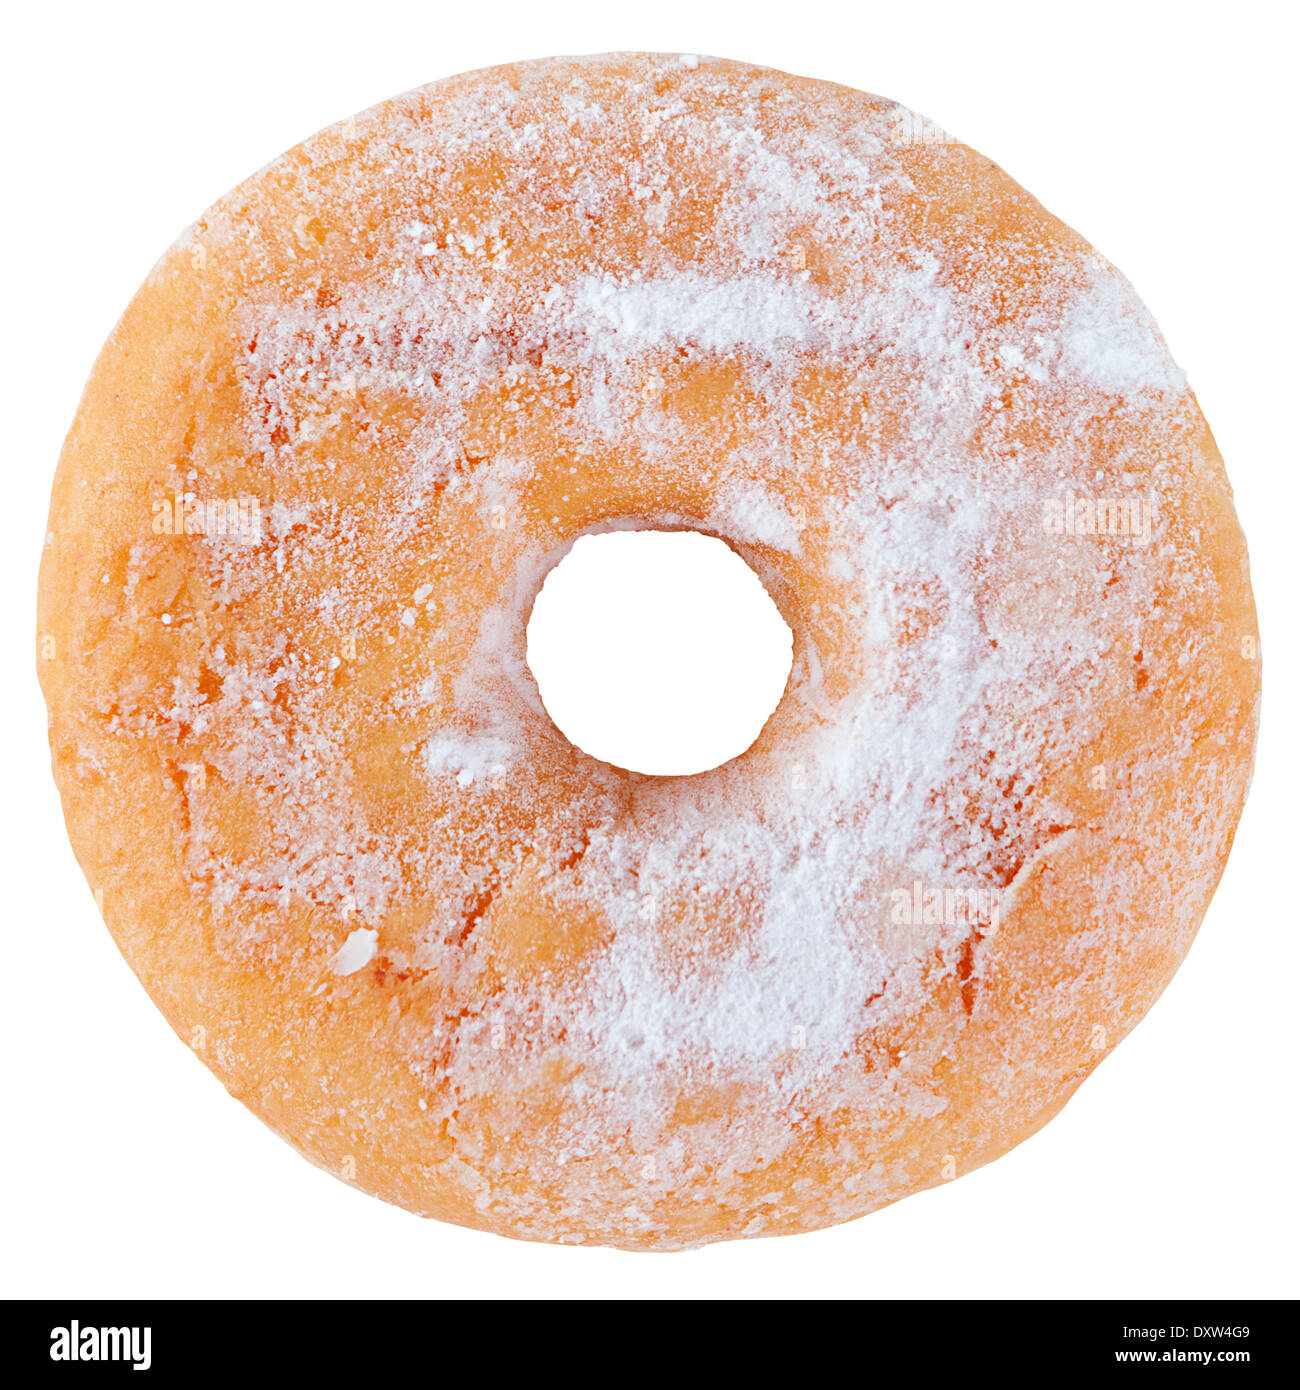 Donut de azúcar en polvo aislado en blanco Foto de stock